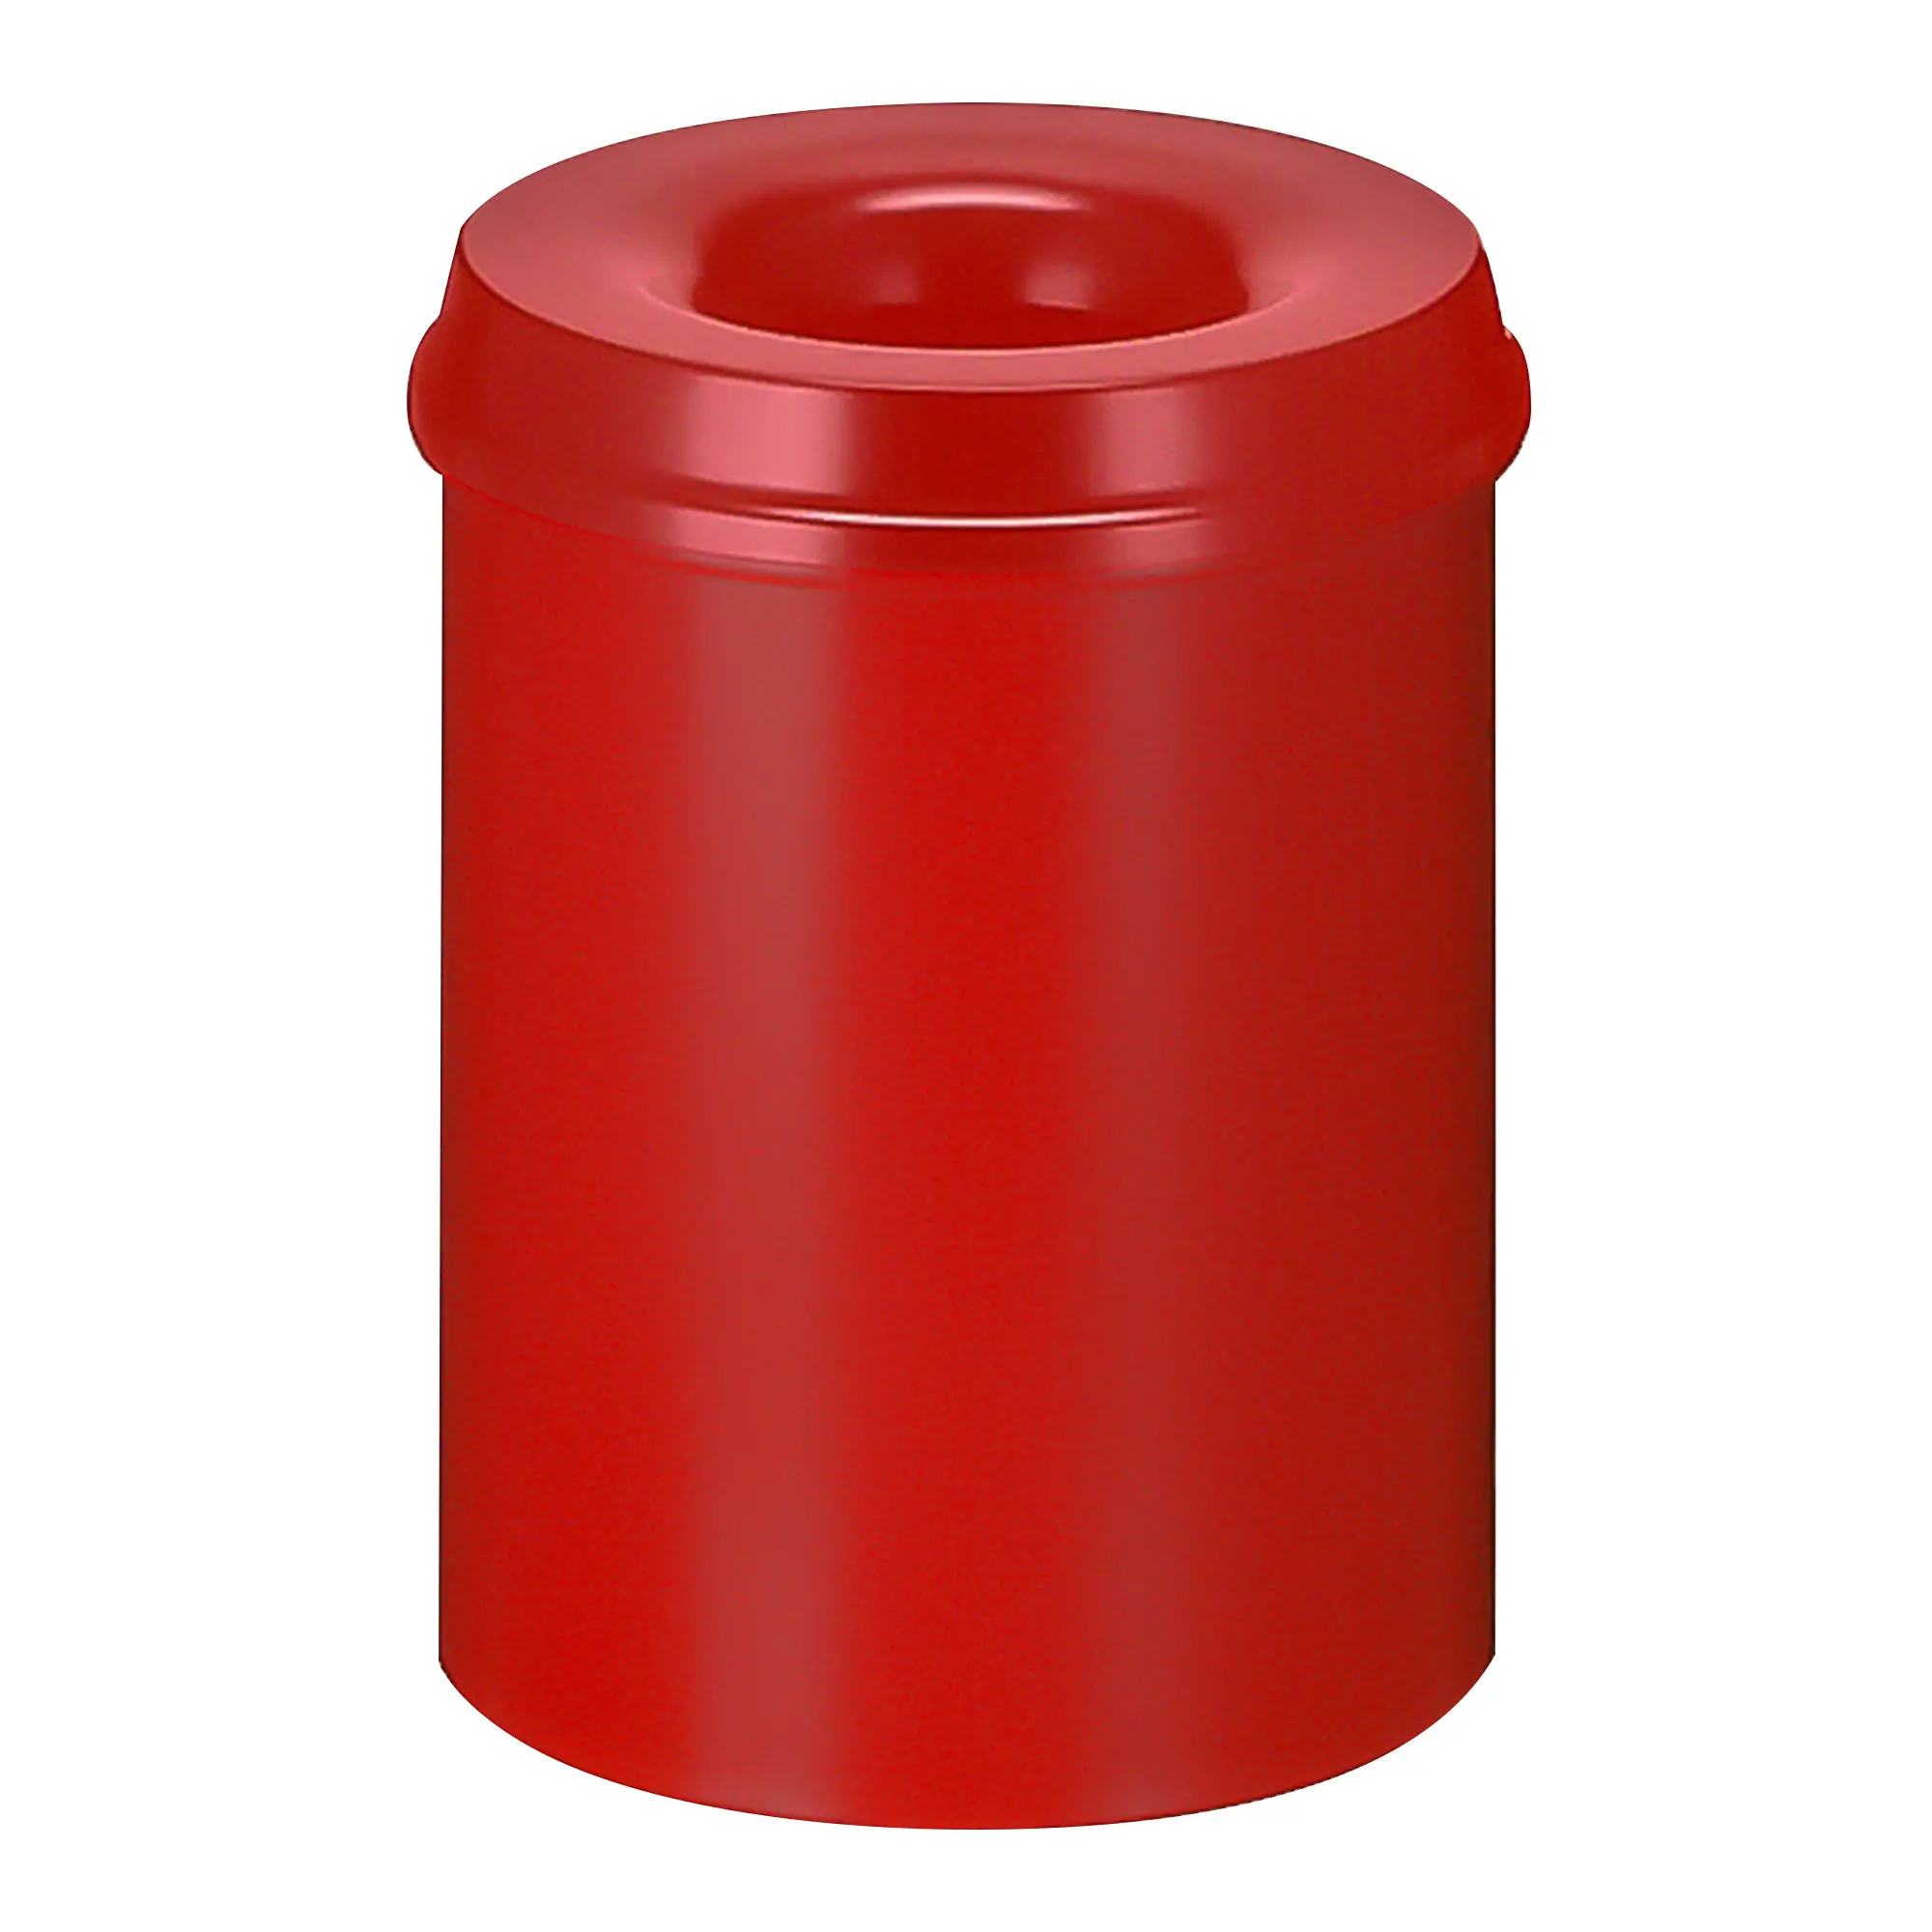 V-Part Feuerlöschender Papierkorb 15 Liter rot 31001279_1